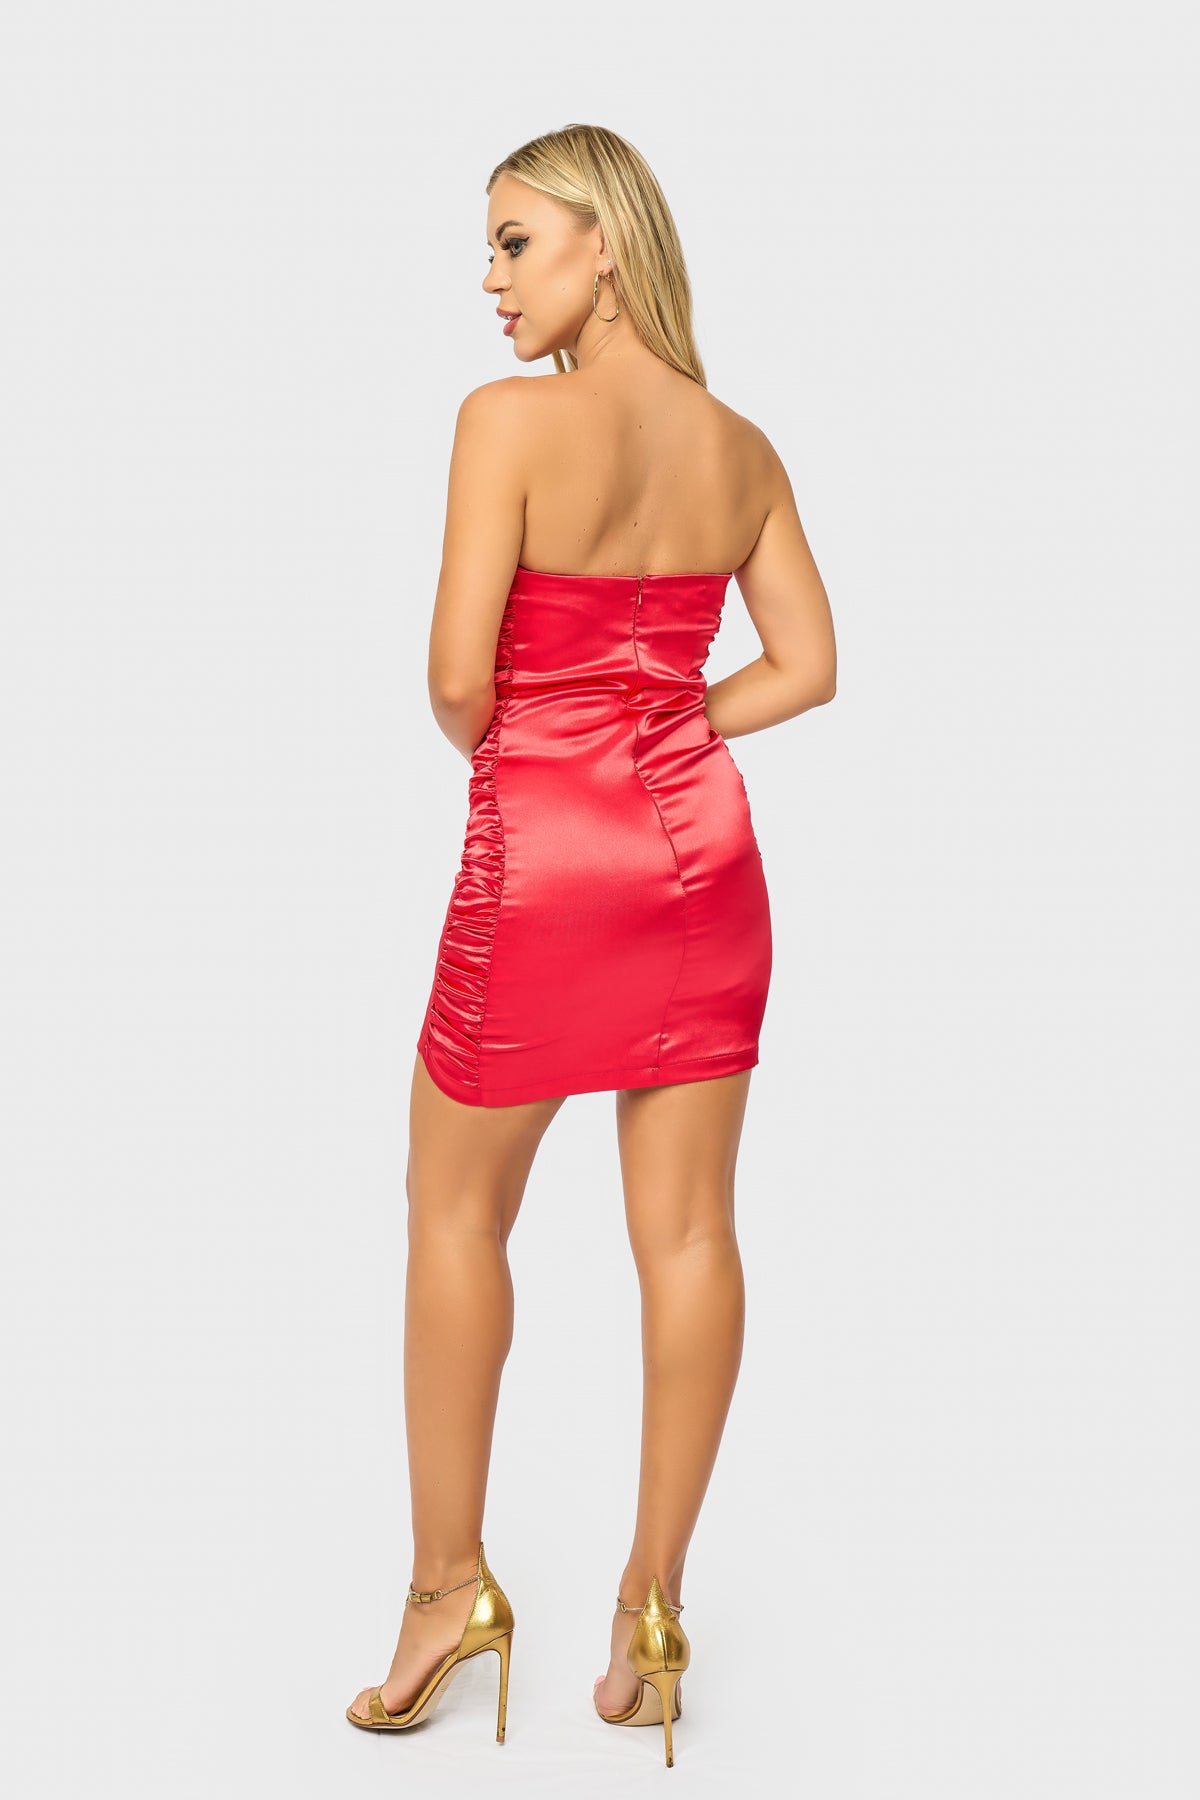 Heartbreaker Dress - Sexy Red